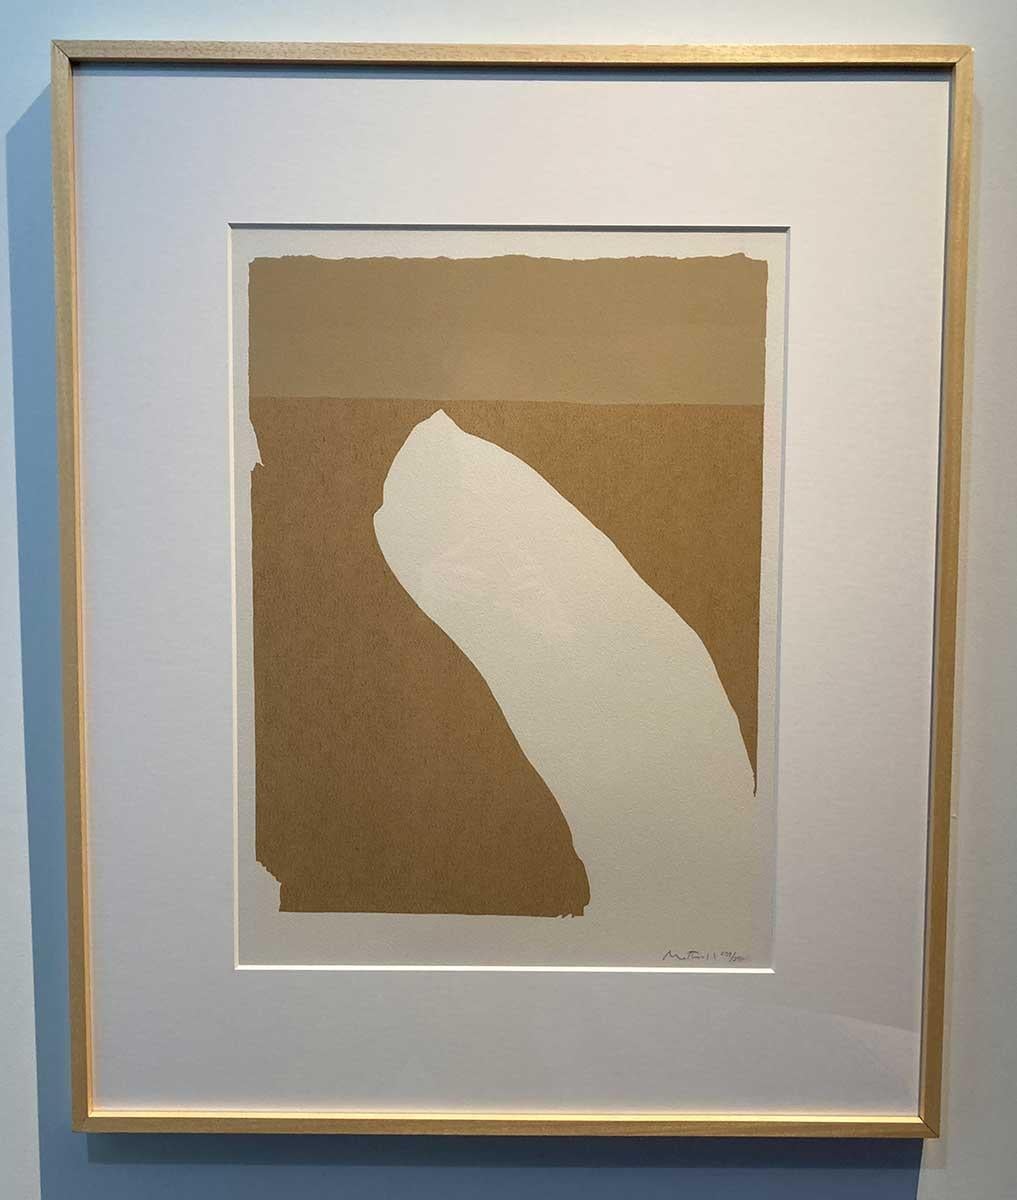 Cette sérigraphie de Robert Motherwell, Untitled (from the Flight Portfolio) a été imprimée sur du papier Arches Imperial en 1970. L'estampe est signée à la main au crayon et numérotée 239/250 par l'artiste.

Des tons de bruns chauds créent un champ